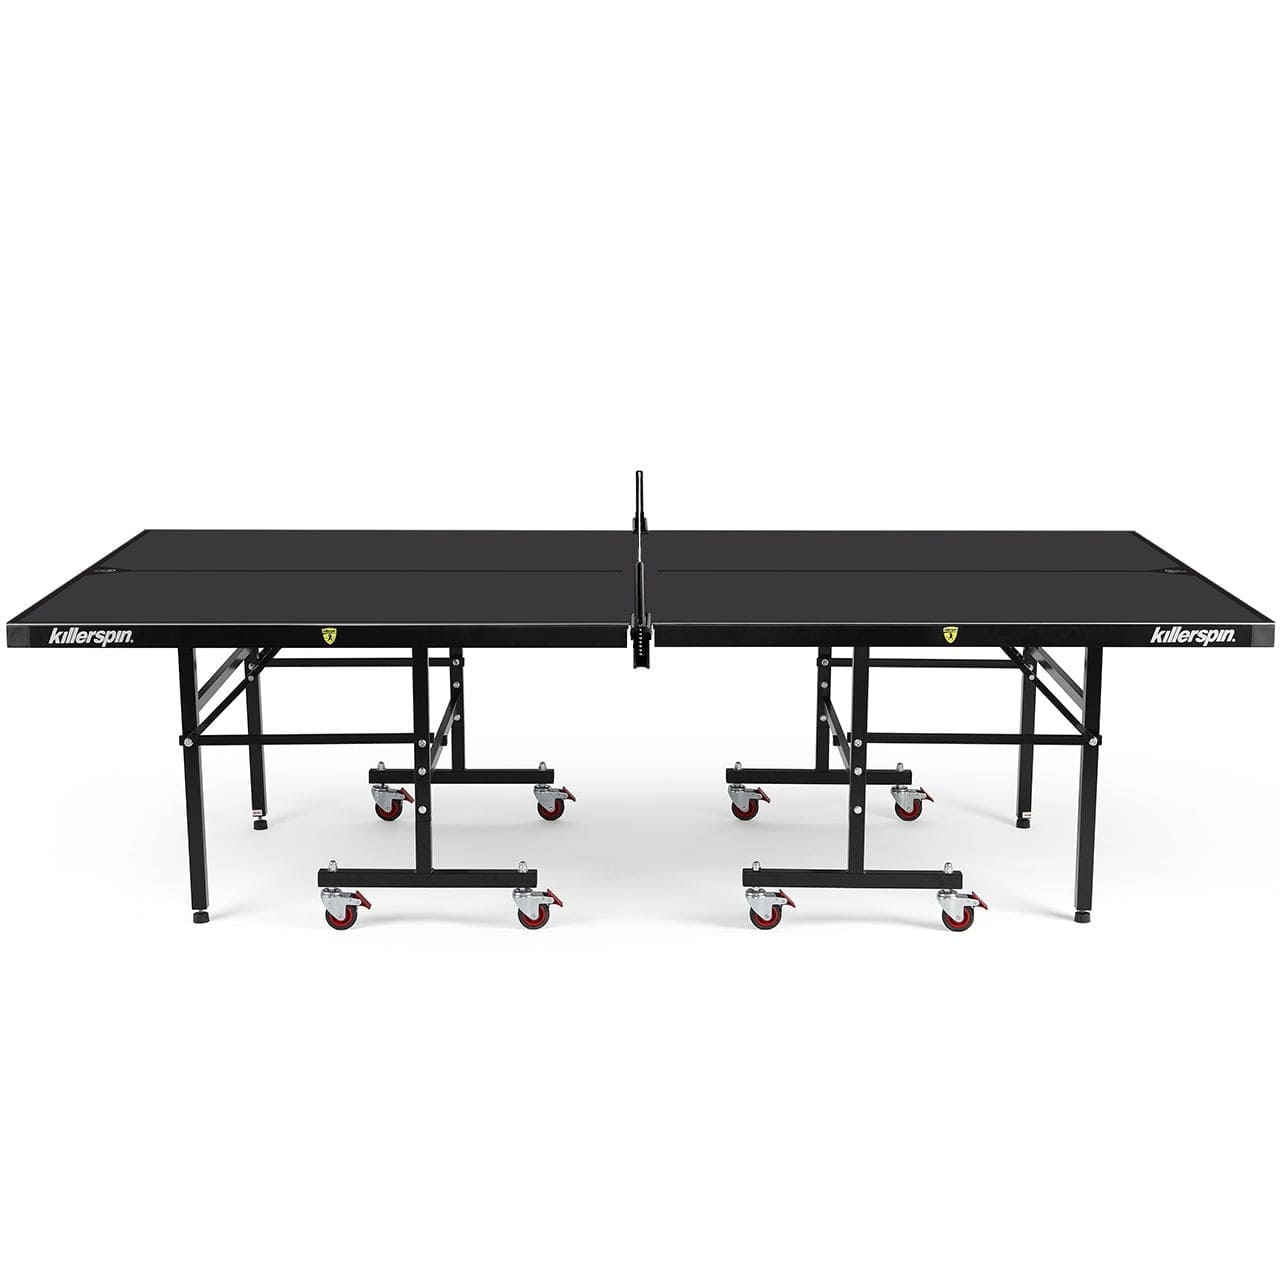 Killerspin MyT7 BlackStorm Folding Ping Pong Table